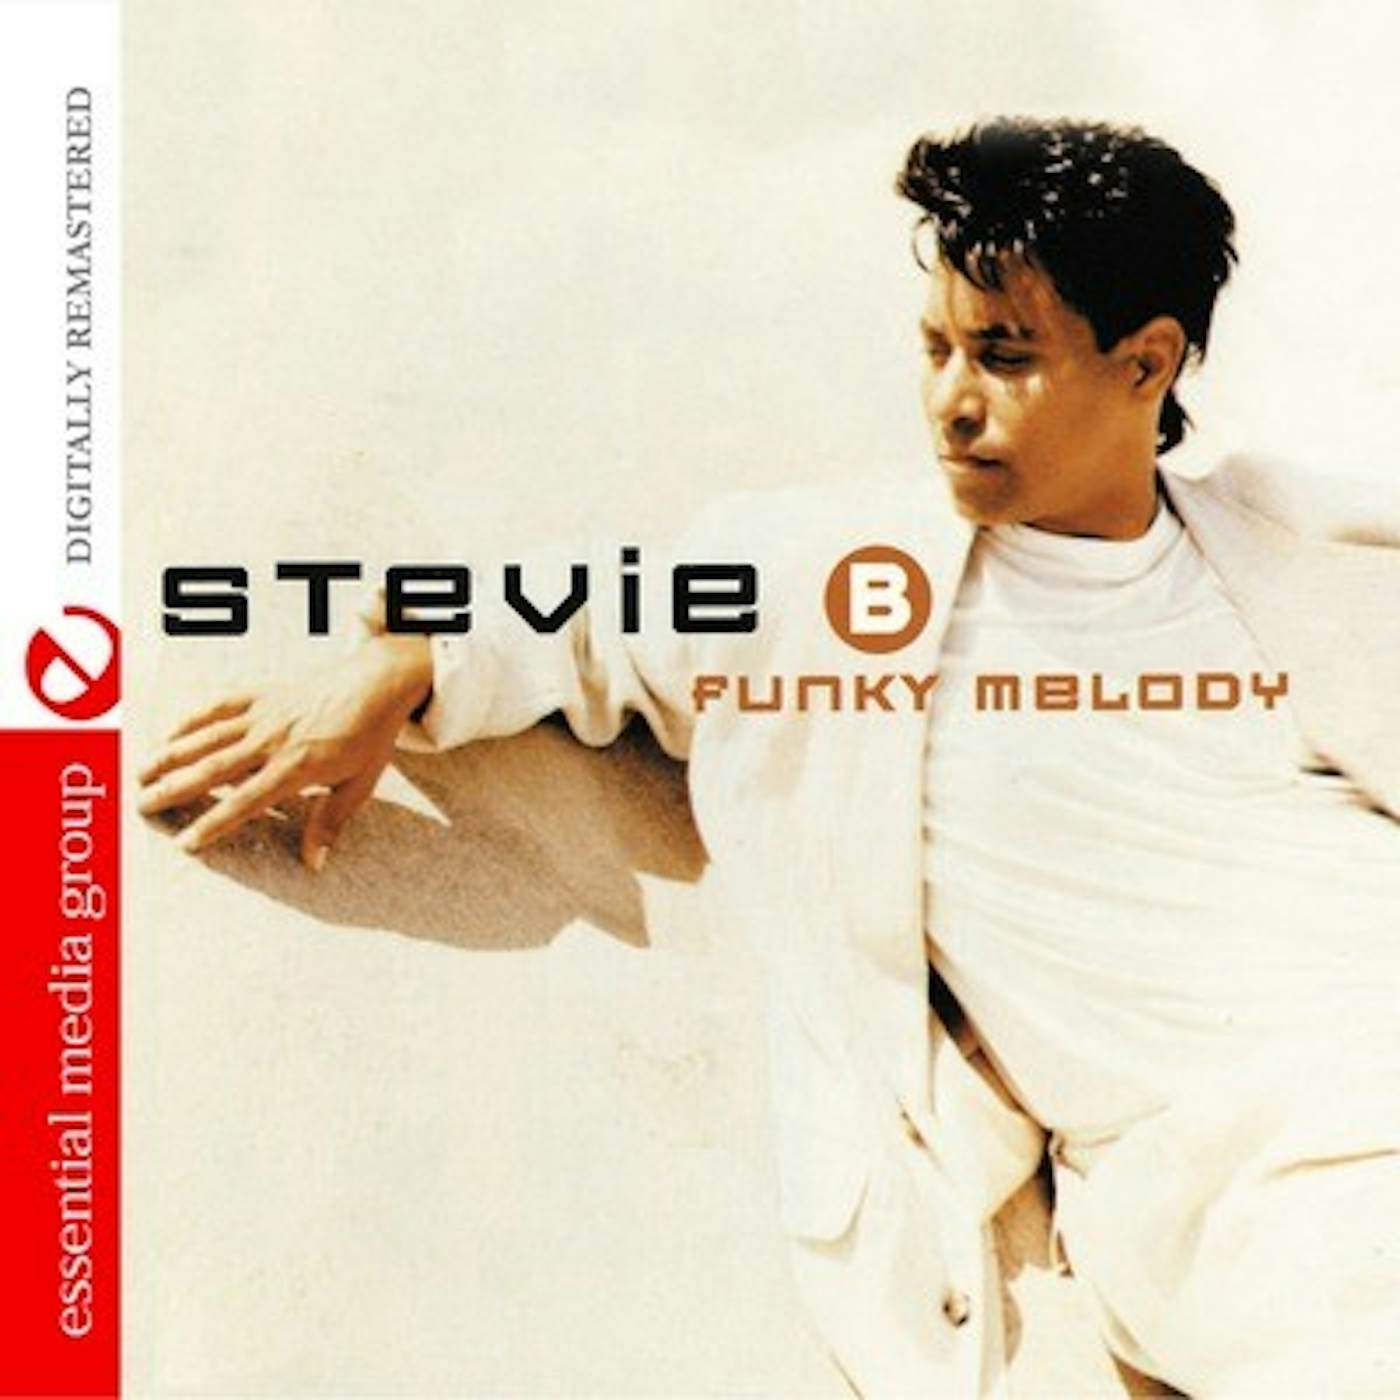 Stevie B FUNKY MELODY CD